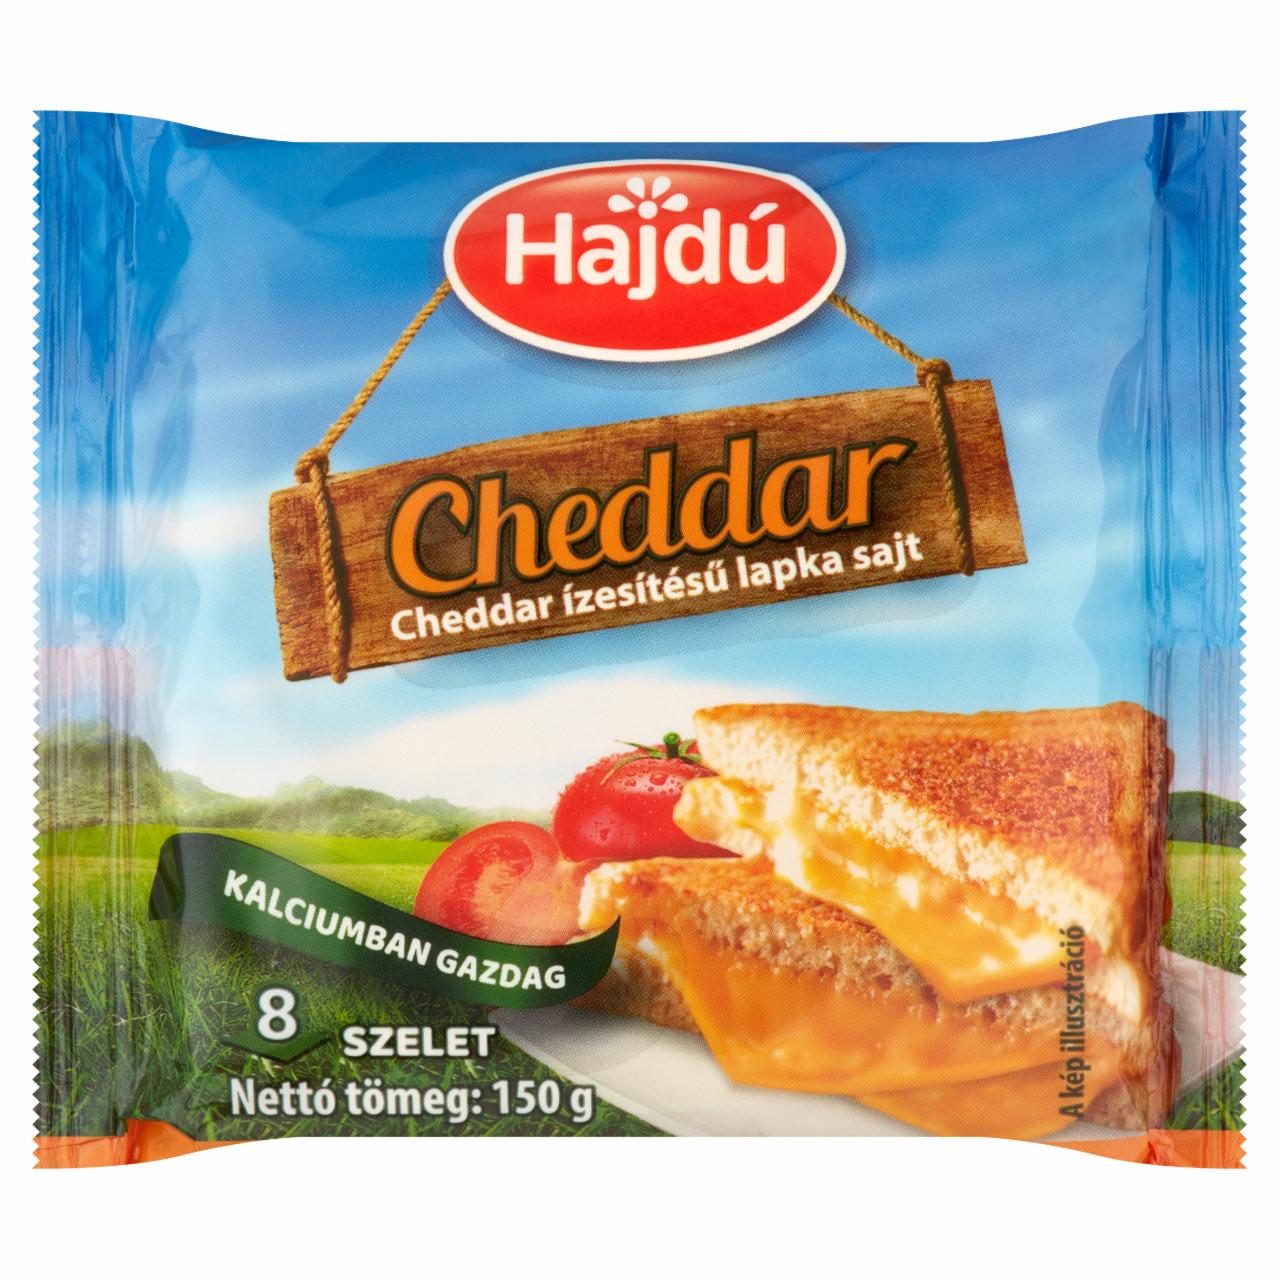 Képek - Cheddar ízesítésű lapka sajt Hajdú